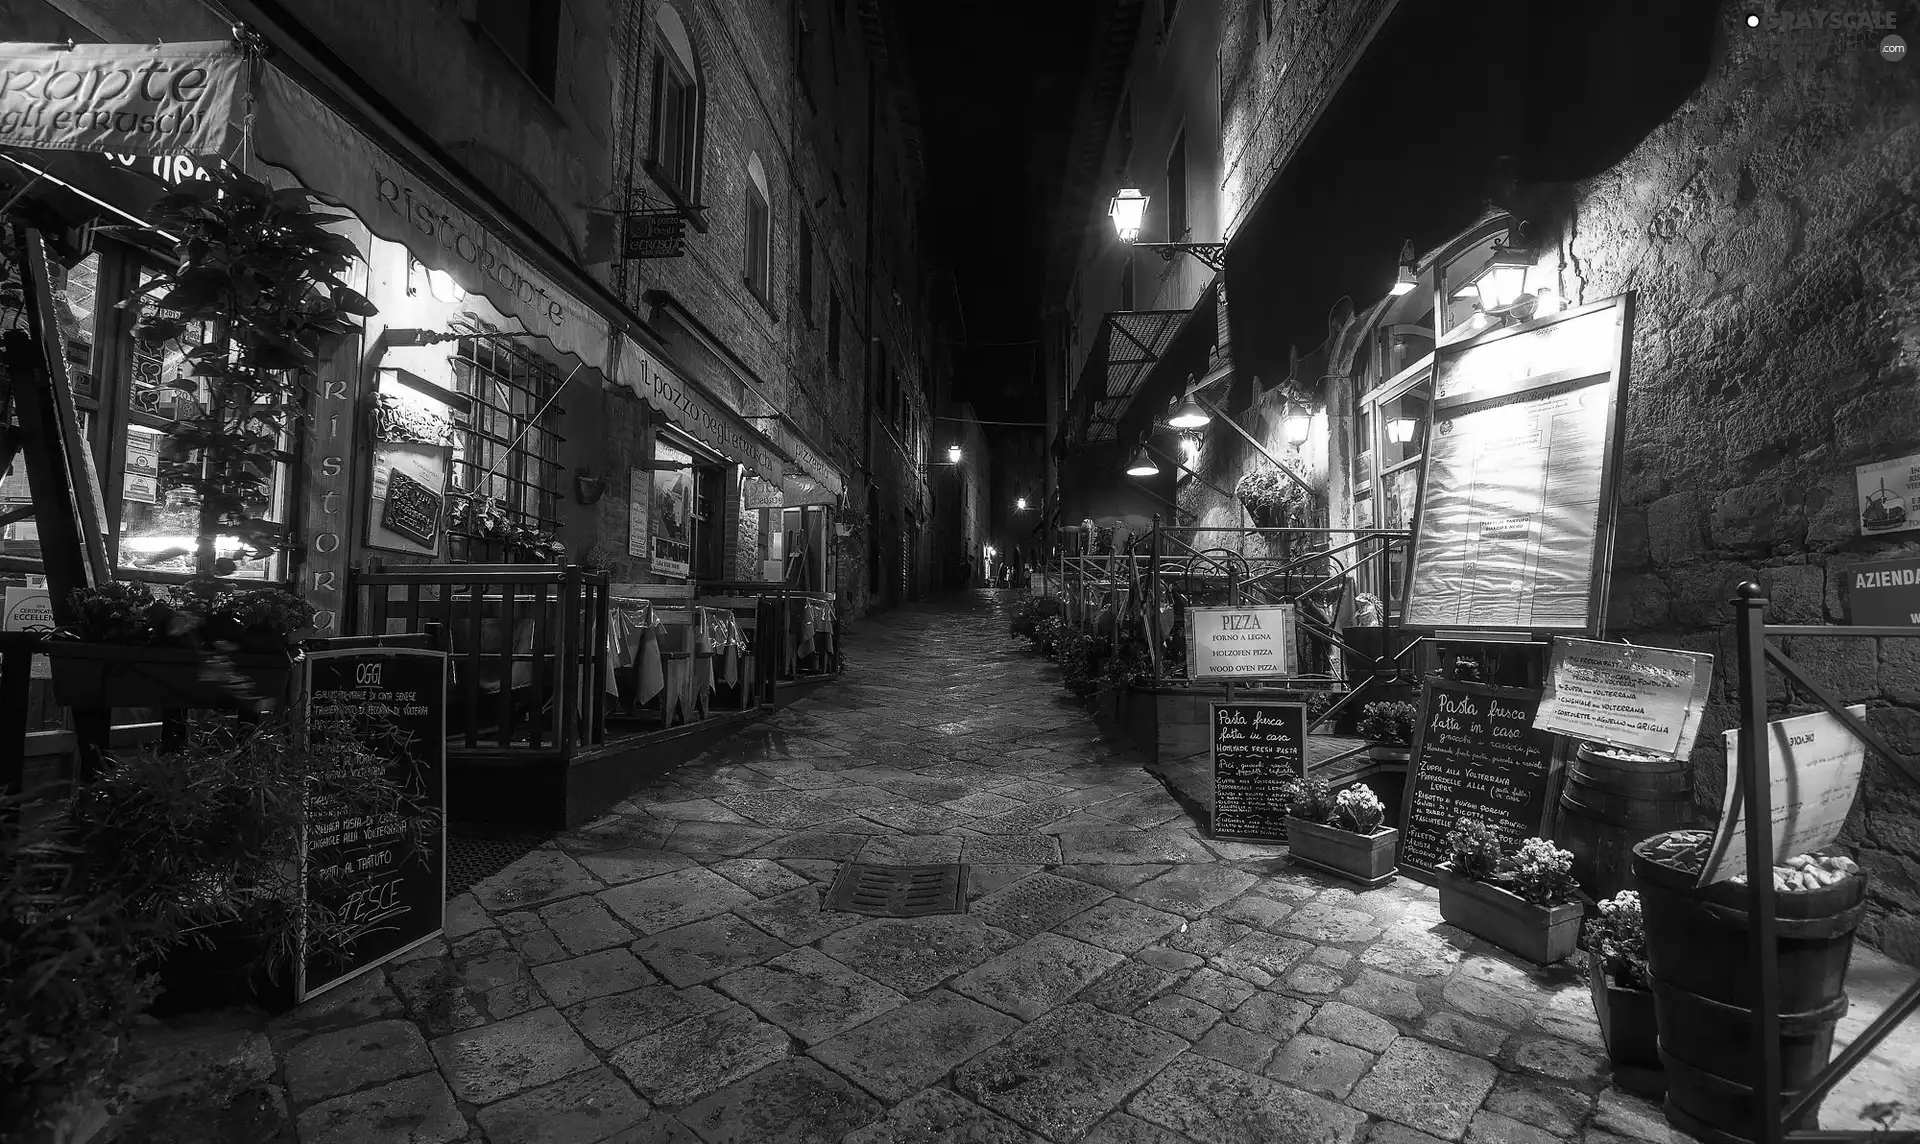 illuminated, Italy, Houses, Restaurants, alley, Tuscany